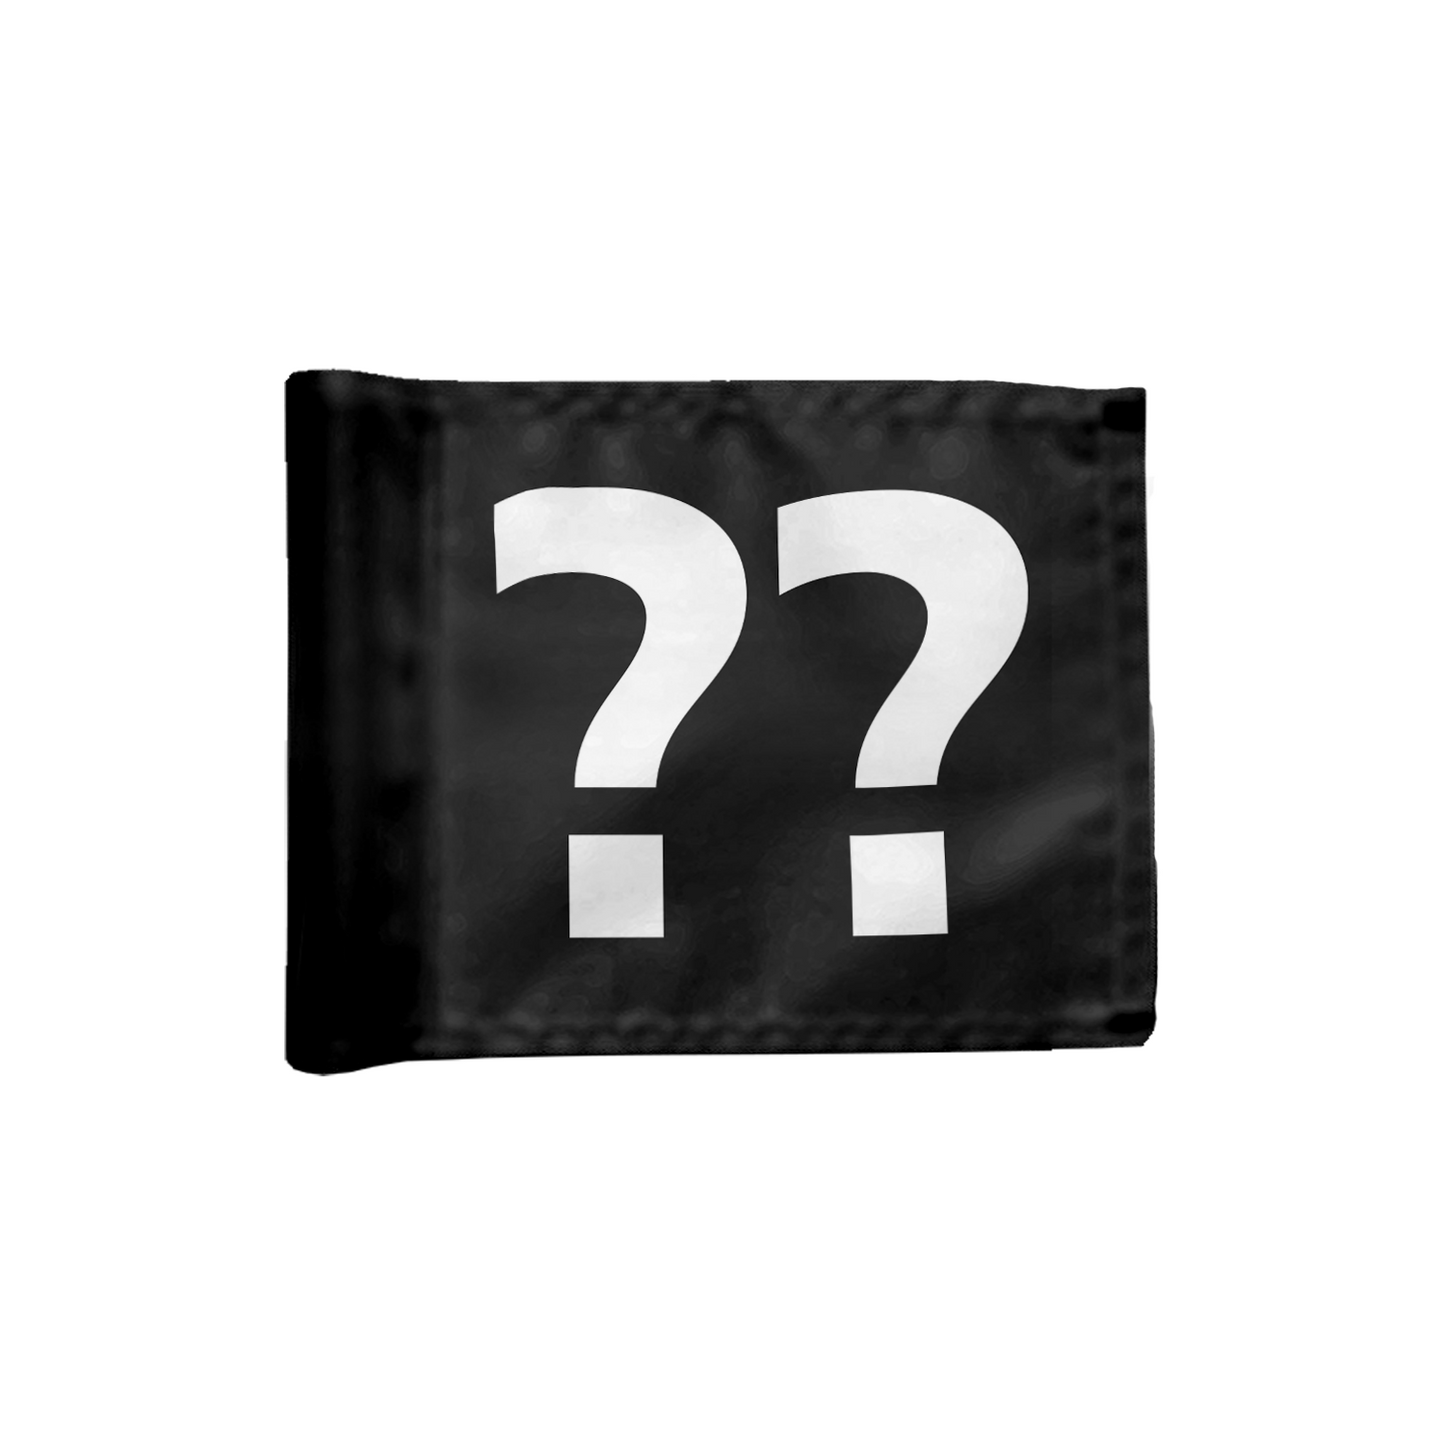 Stykvis puttinggreen flag enkeltsidet i sort med valgfrit hulnummer, 200 gram flagdug